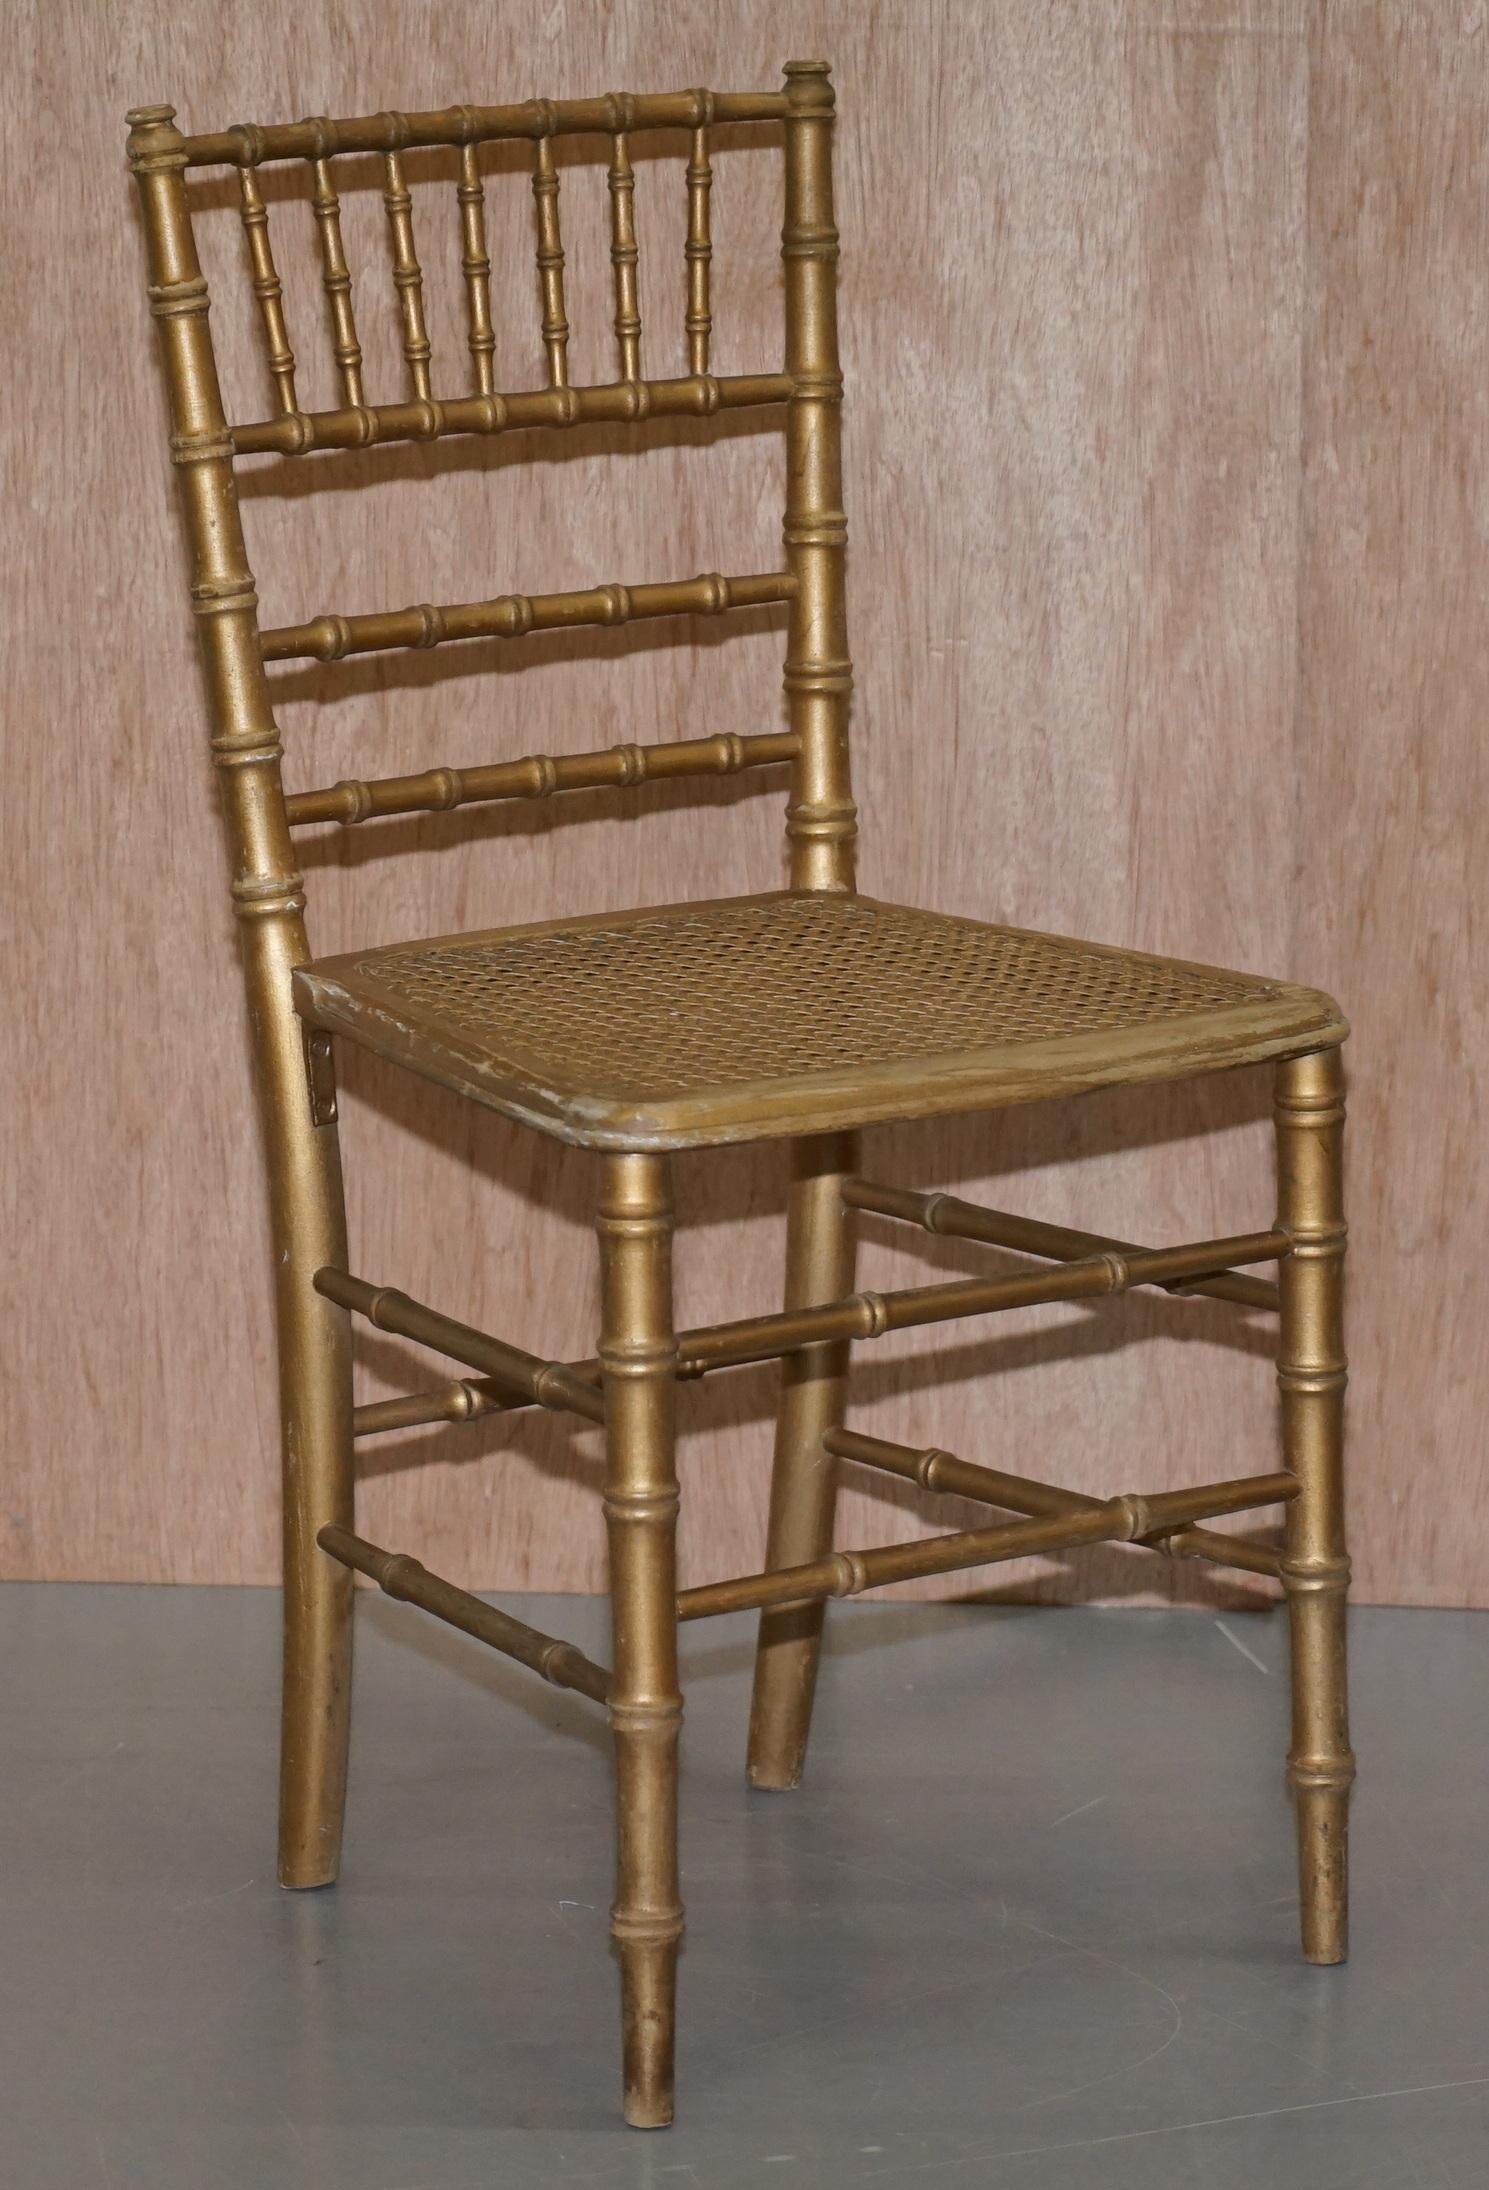 Wir freuen uns, diesen schönen originalen vergoldeten Famboo-Stuhl im Regency-Stil zum Verkauf anbieten zu können

Ich habe ein passendes Paar dieses exakten Modells unter meinen anderen Artikeln aufgelistet und dann dieses Einzelstück. Ich habe